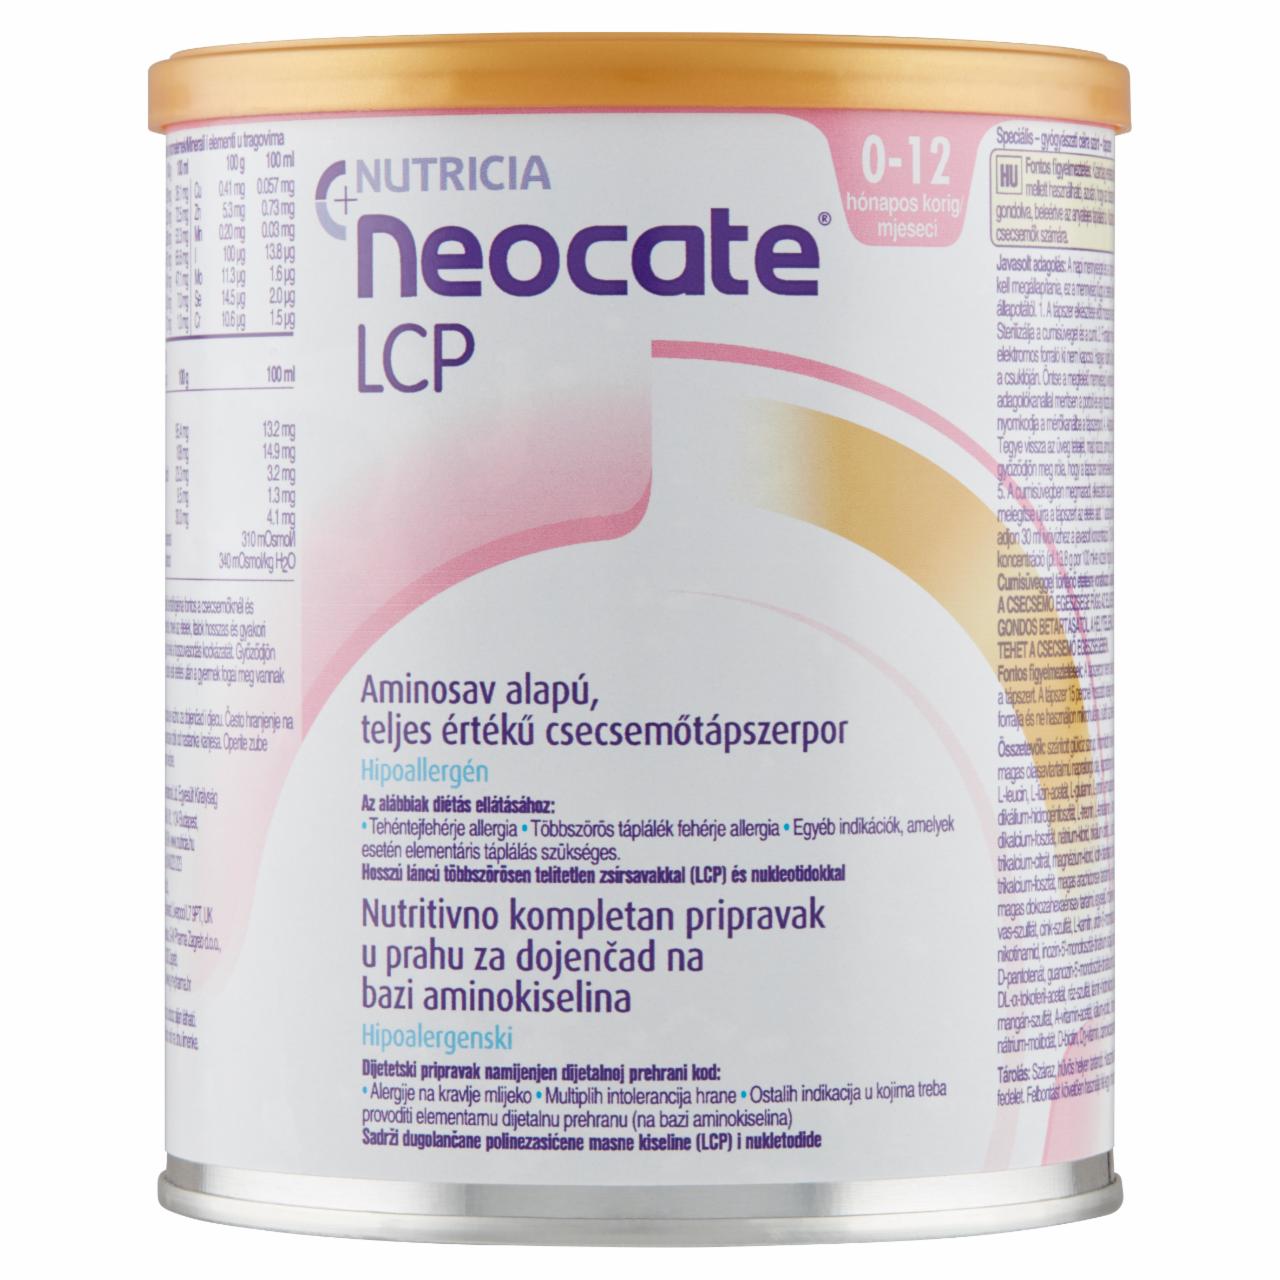 Képek - Nutricia Neocate LCP aminosav alapú, teljes értékű csecsemőtápszerpor 0-12 hónapos korig 400 g